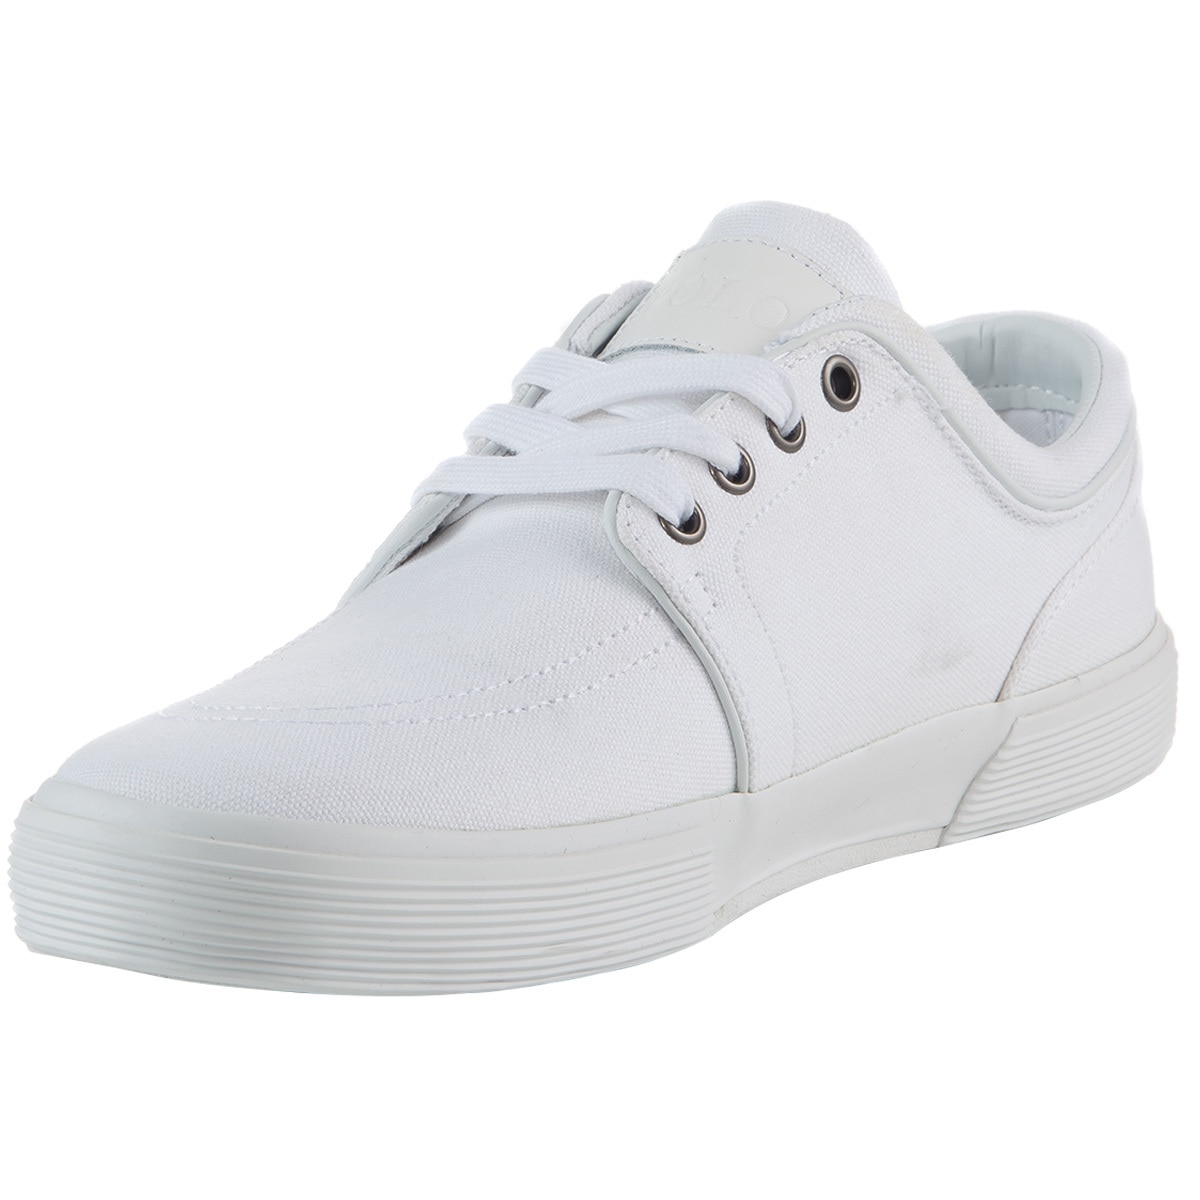 Faxon Shoe - White